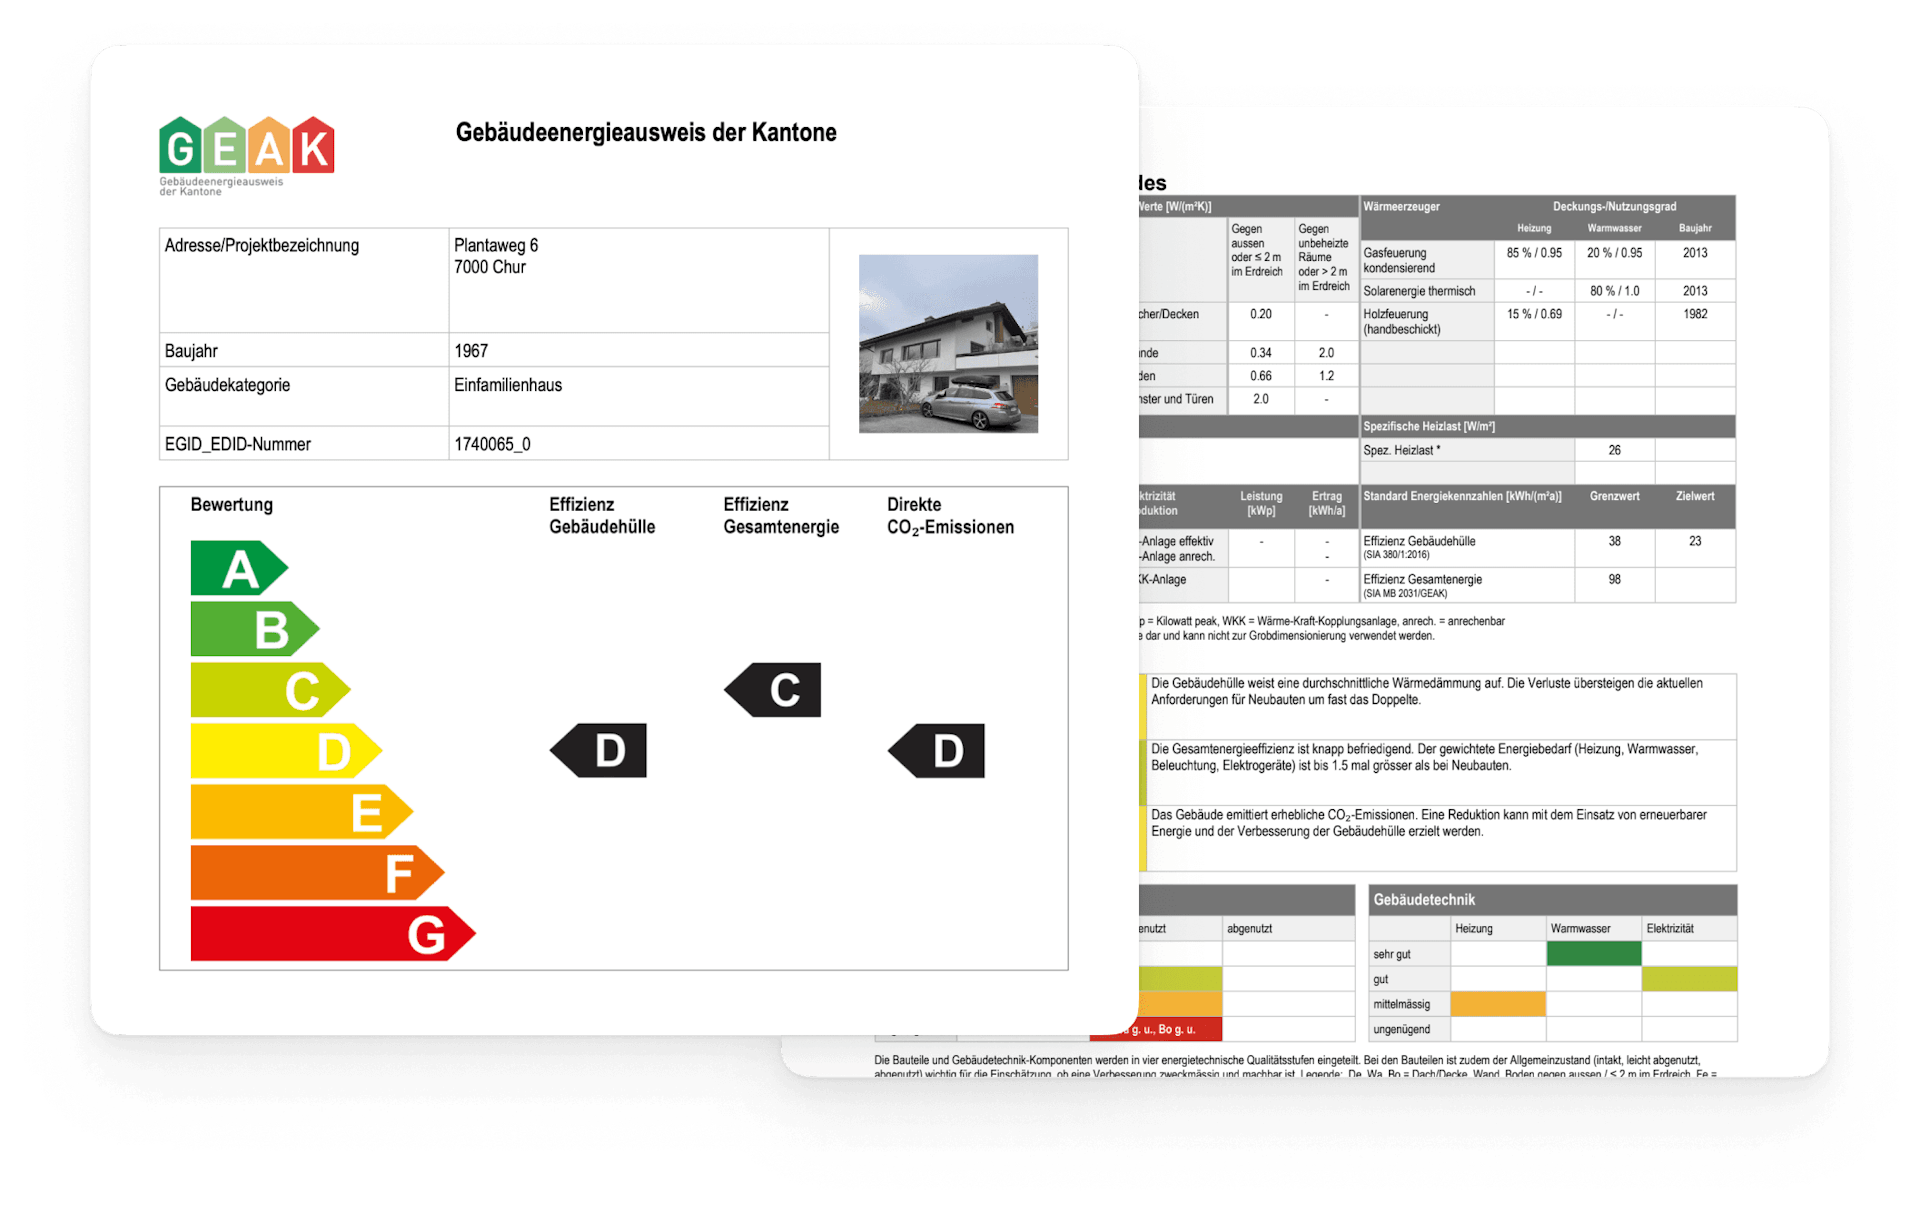 GEAK - The cantonal building energy certificate